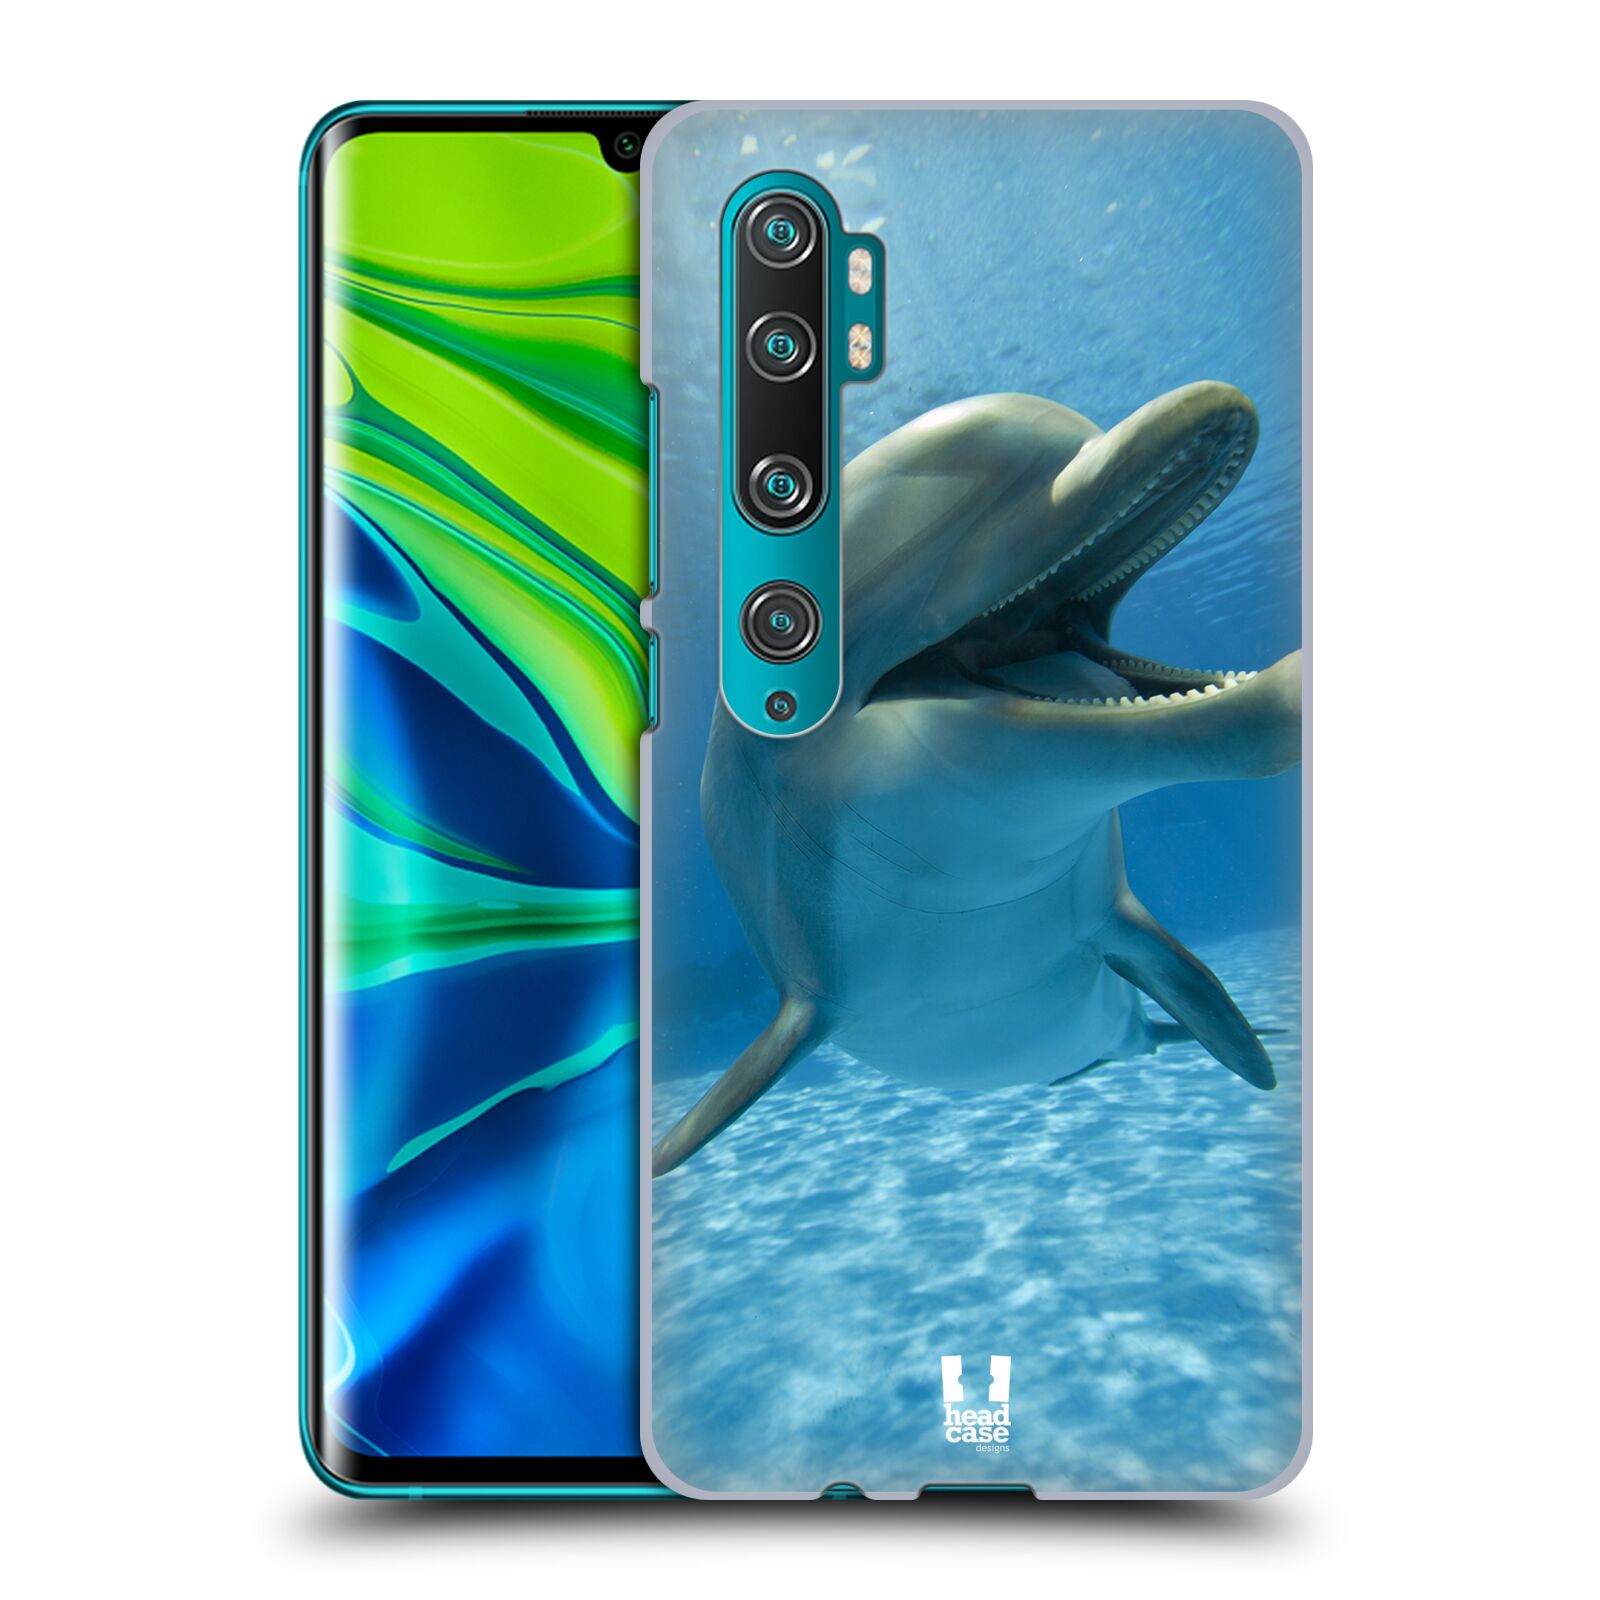 Zadní obal pro mobil Xiaomi Mi Note 10 / Mi Note 10 PRO - HEAD CASE - Svět zvířat delfín v moři